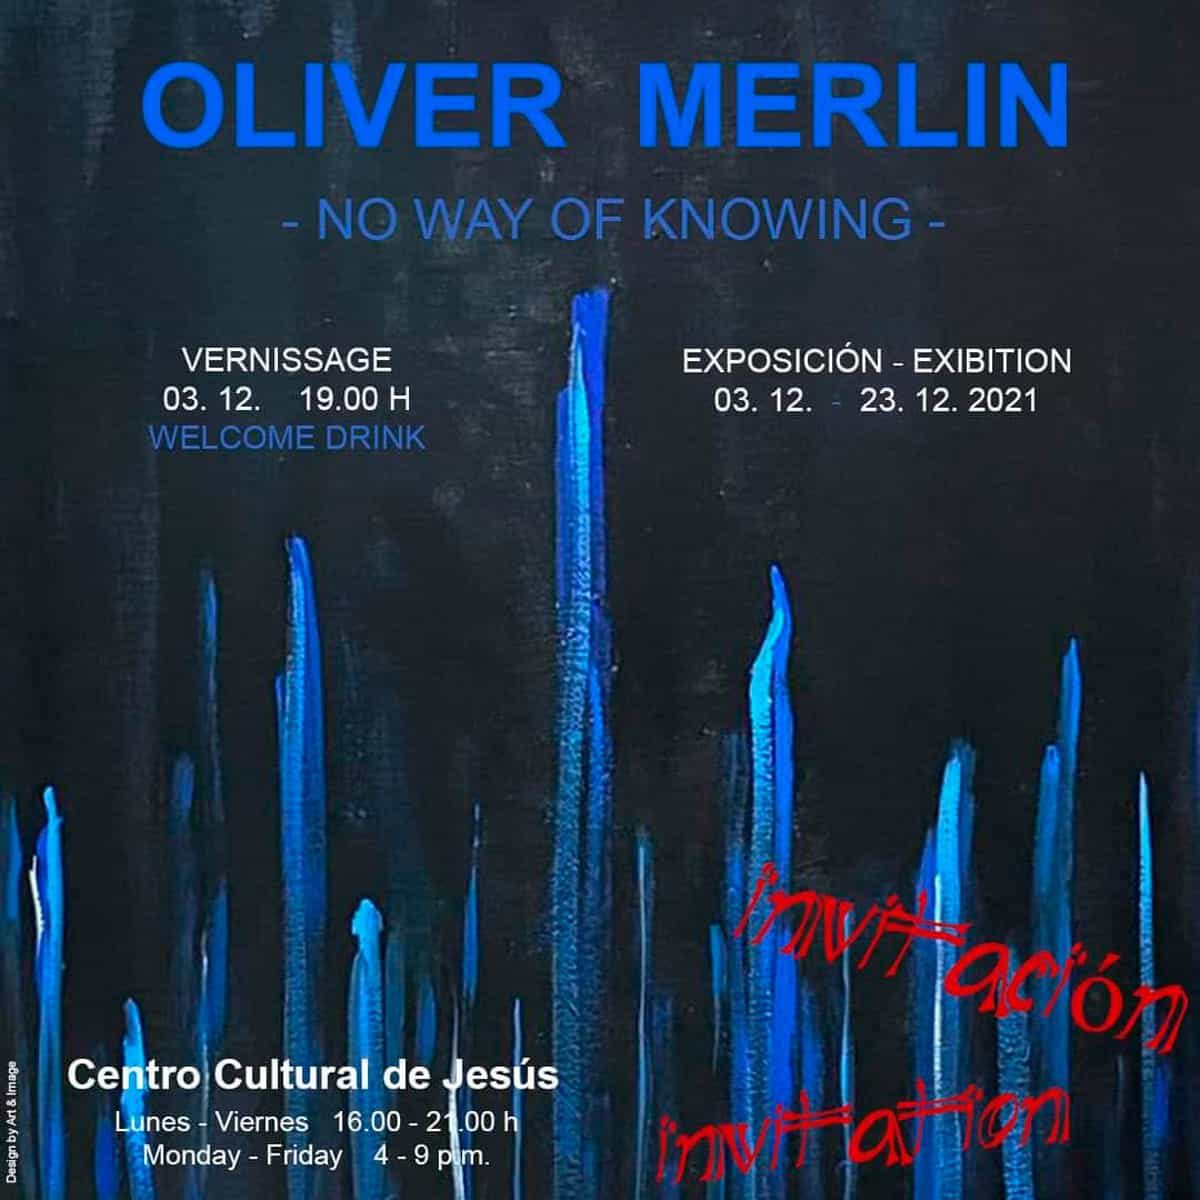 tentoonstelling-oliver-merlin-cultureel-centrum-van-jezus-ibiza-2021-welcometoibiza